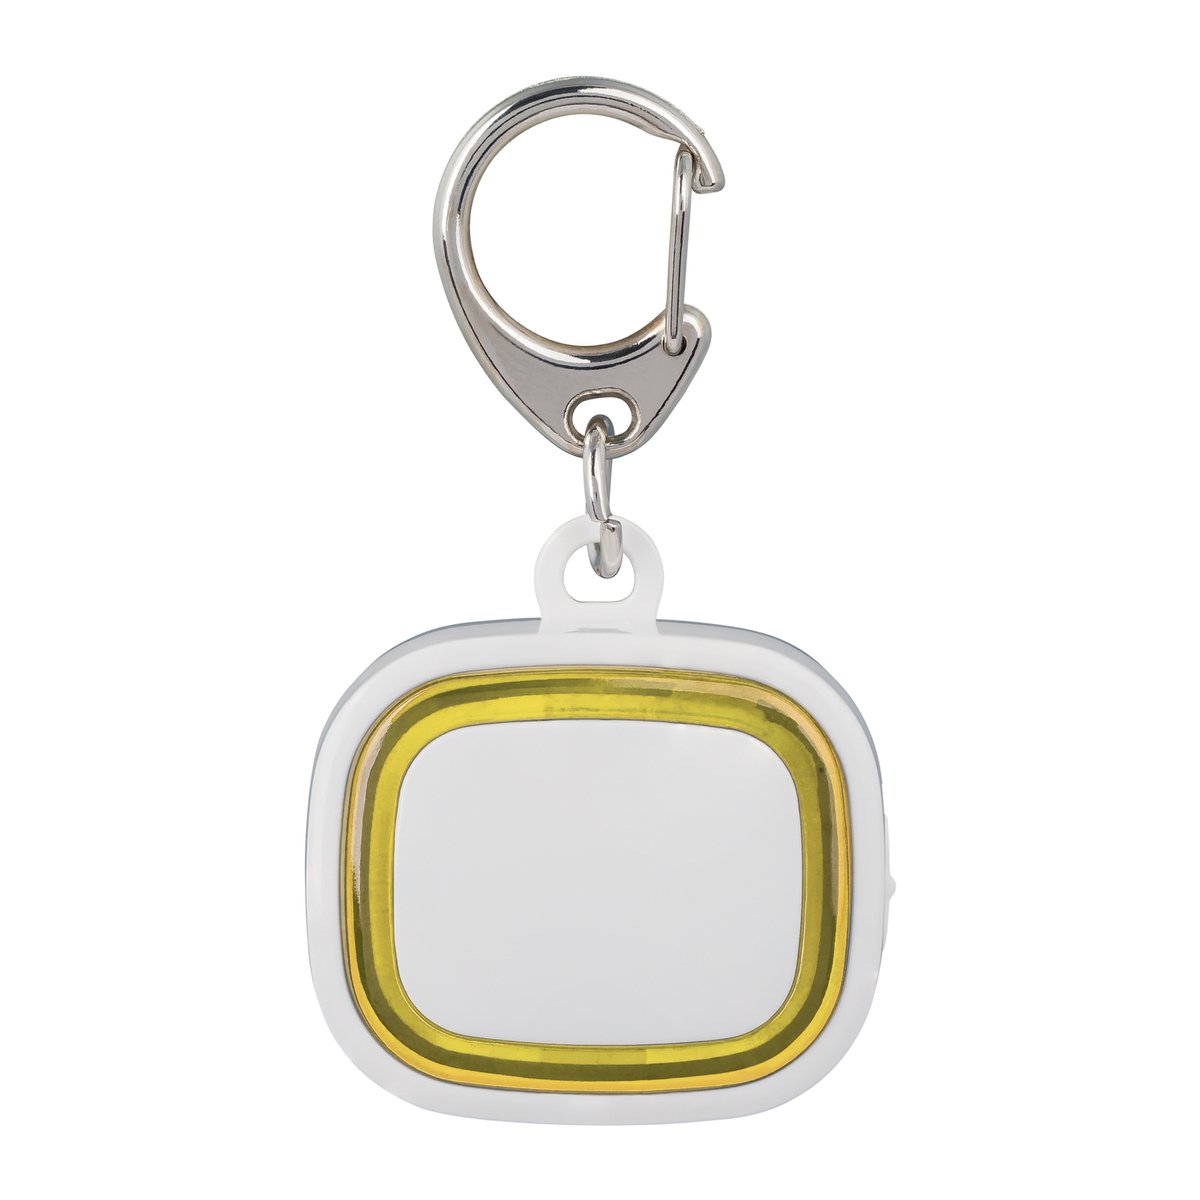 Porte-clés lumineux rechargeable COLLECTION 500 jaune